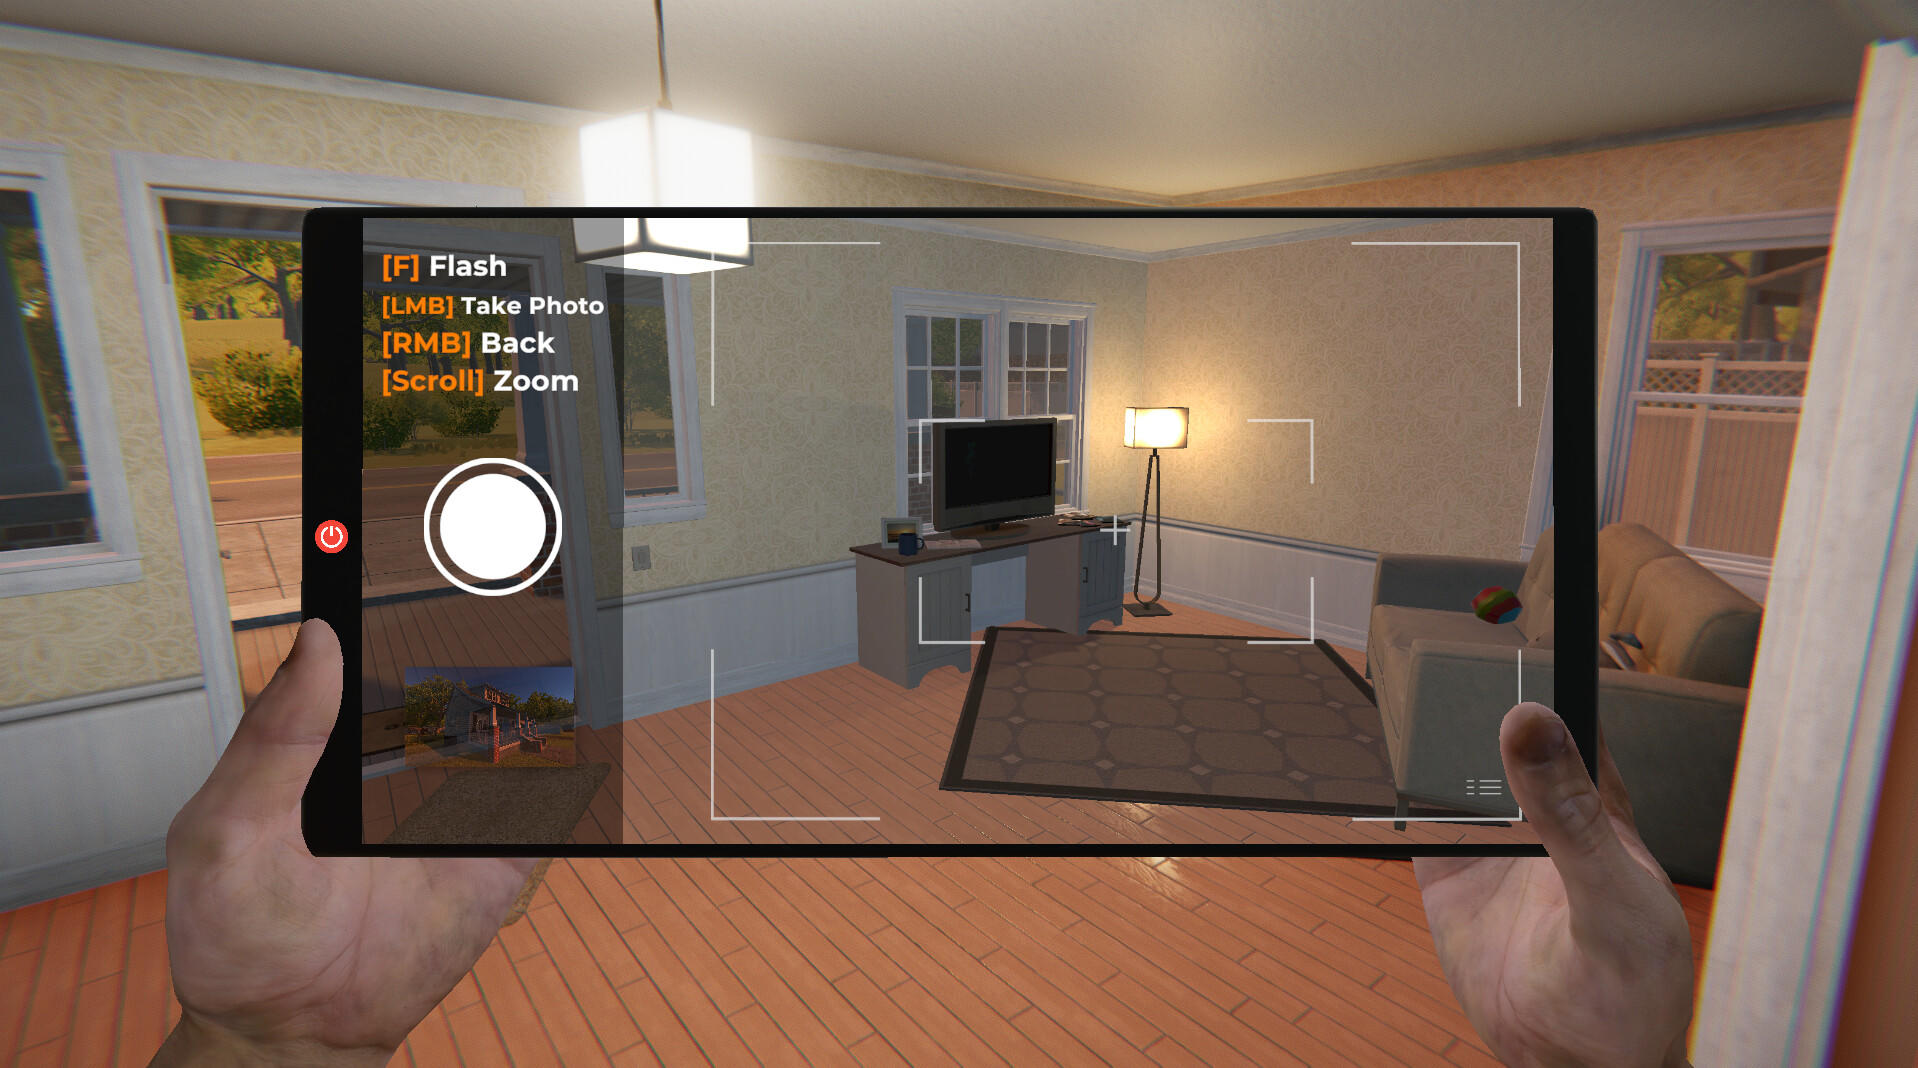 Estate Agent Simulator screenshot game